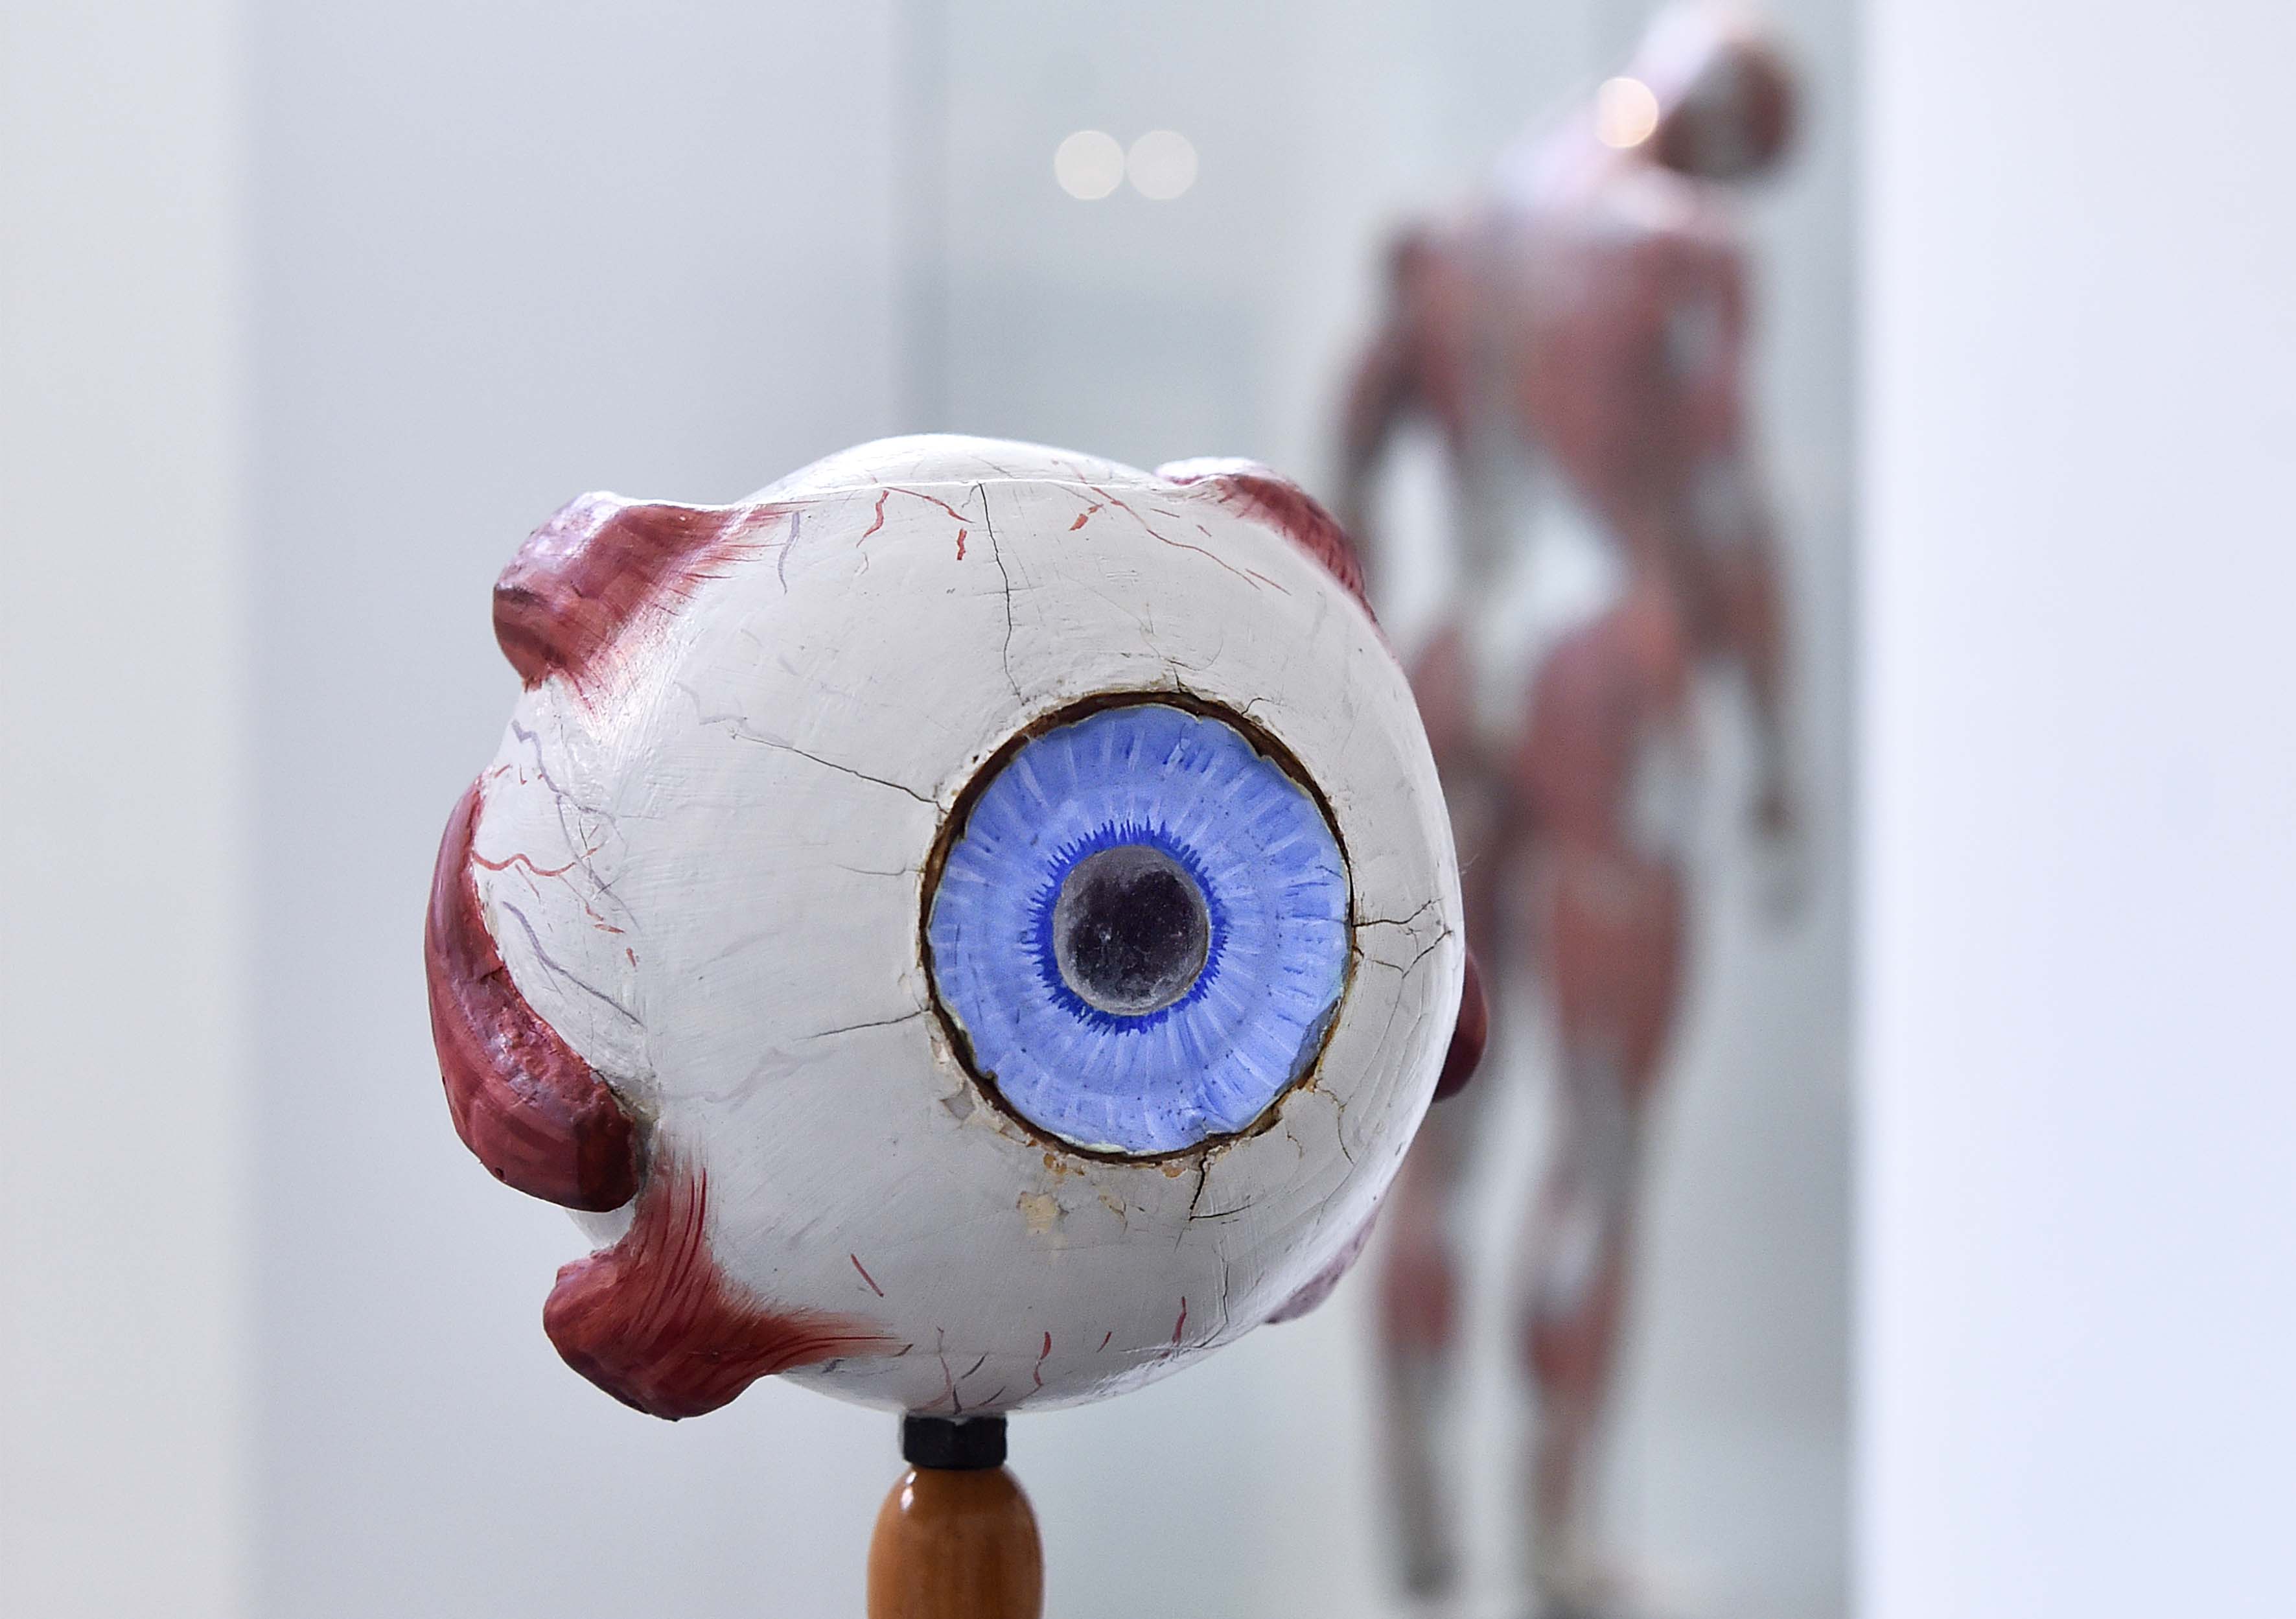 Model van een oog, op de achtergrond de Spierman van Auzoux, gemaakt van papier-maché.Model of an eye, anatomical model by Auzoux in the background, made from papier-mâché.